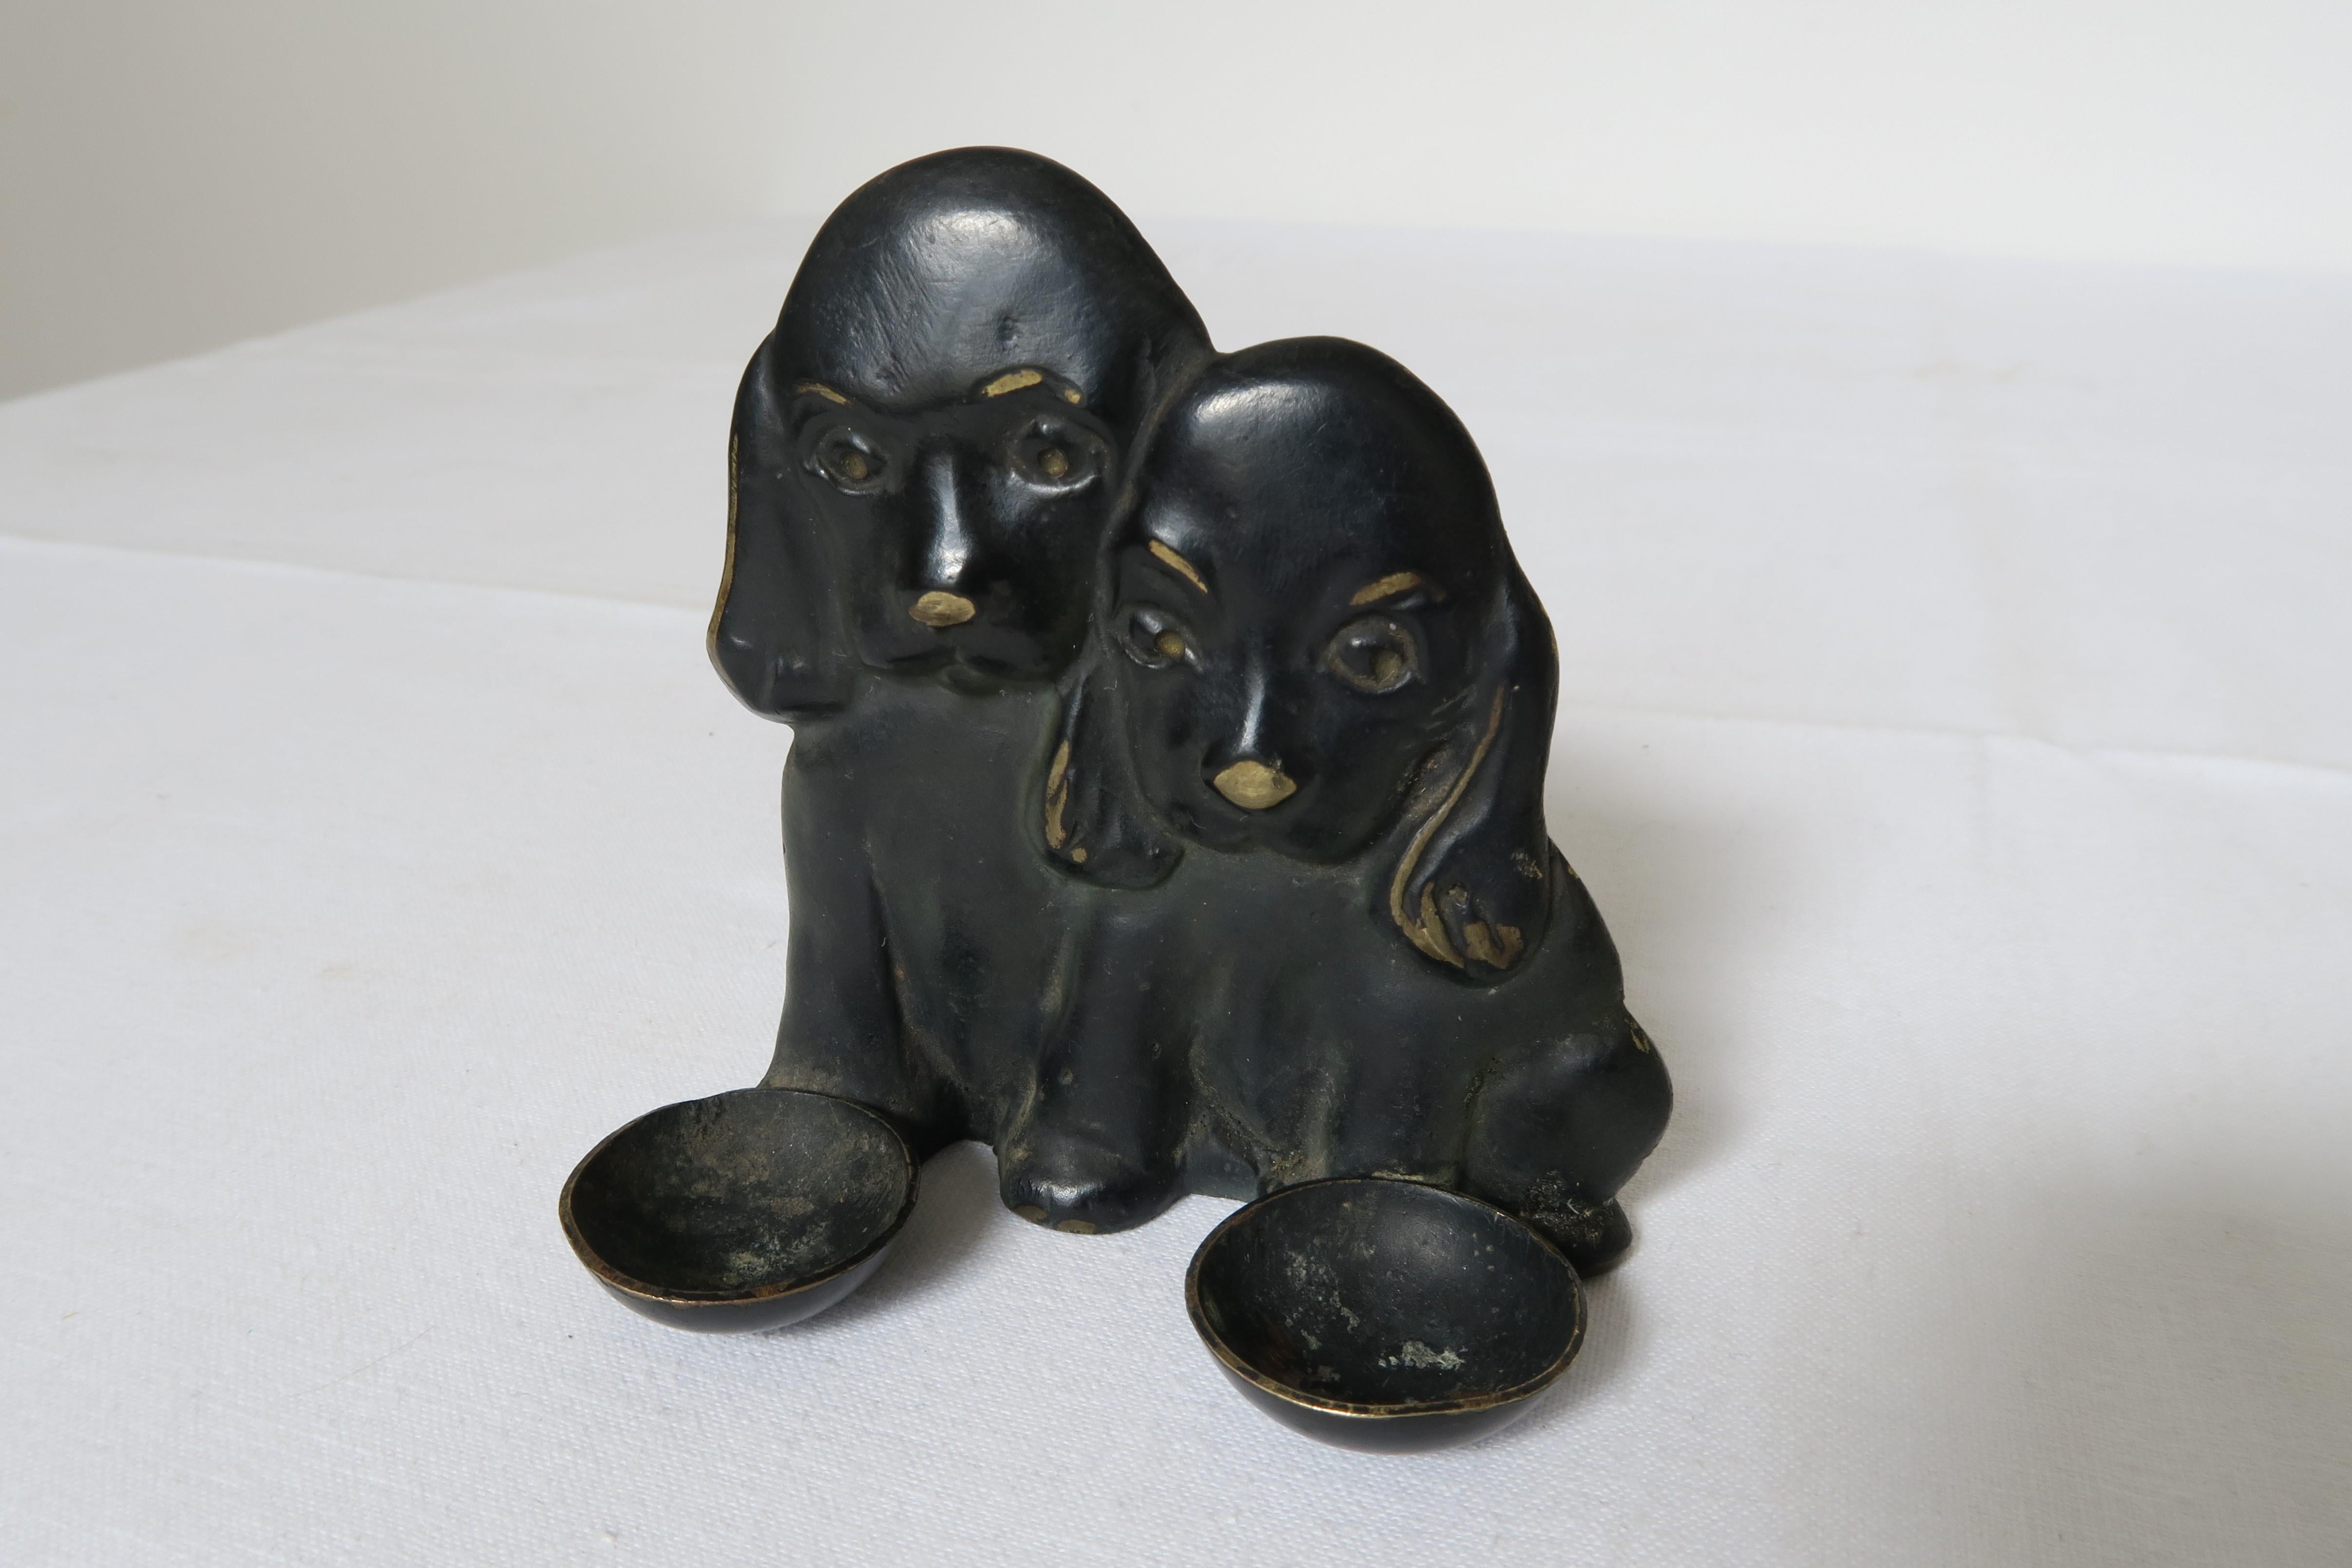 Bei dem Verkaufsobjekt handelt es sich um eine kleine Bronzefigur, die einem liebenswerten Cockerspaniel-Welpenpaar nachempfunden ist und ursprünglich dazu gedacht war, Salz- und Pfefferstreuer zu halten. Sie kann aber auch einfach nur wegen ihrer